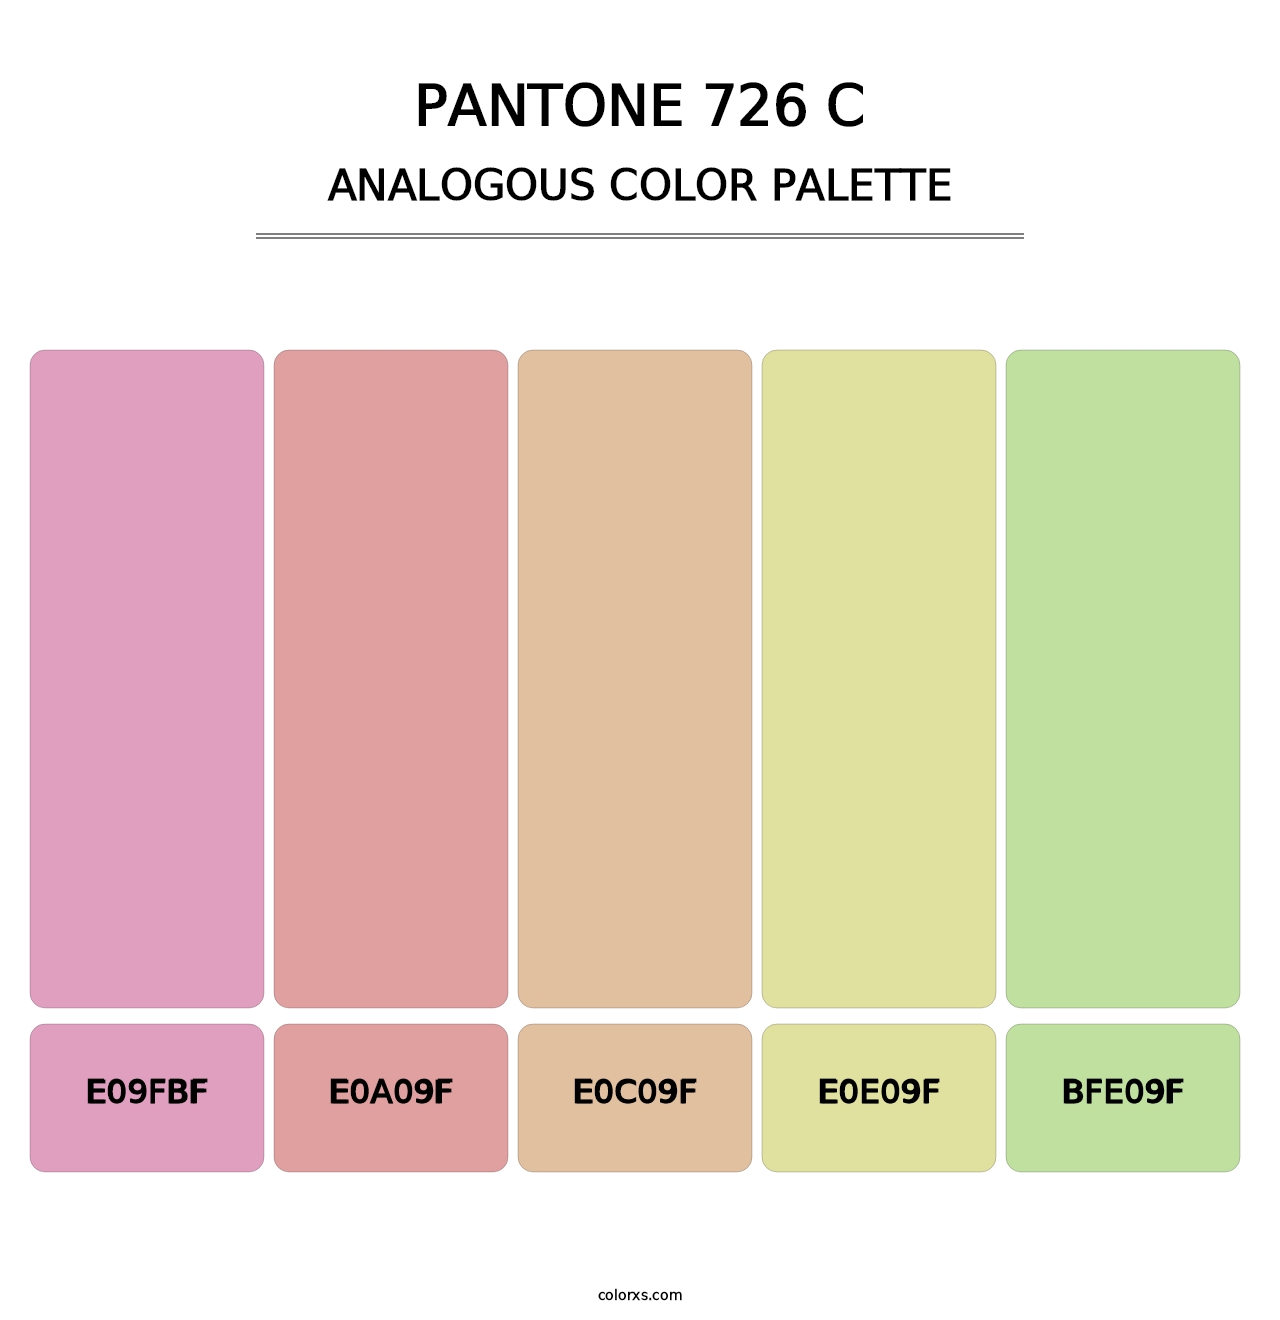 PANTONE 726 C - Analogous Color Palette